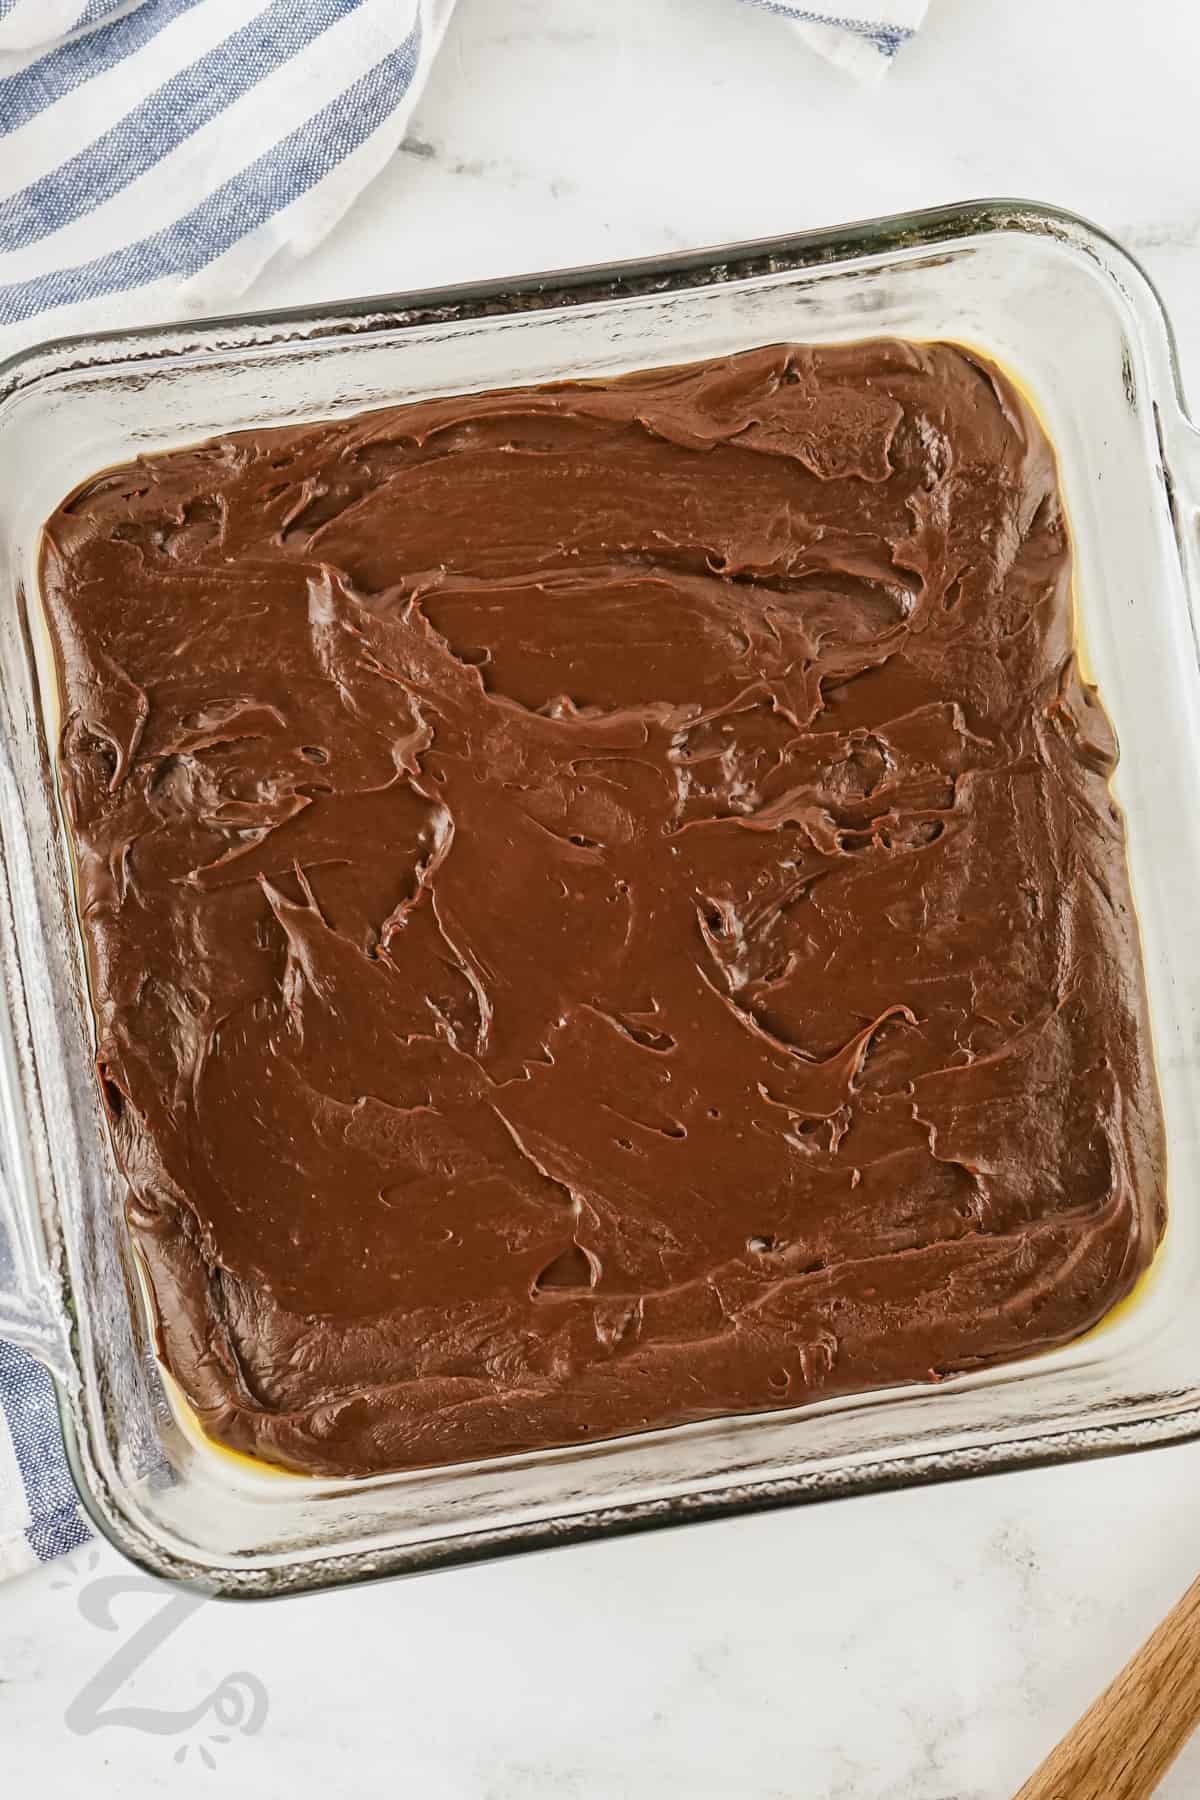 adding 2 Ingredient Chocolate Fudge ingredients to dish